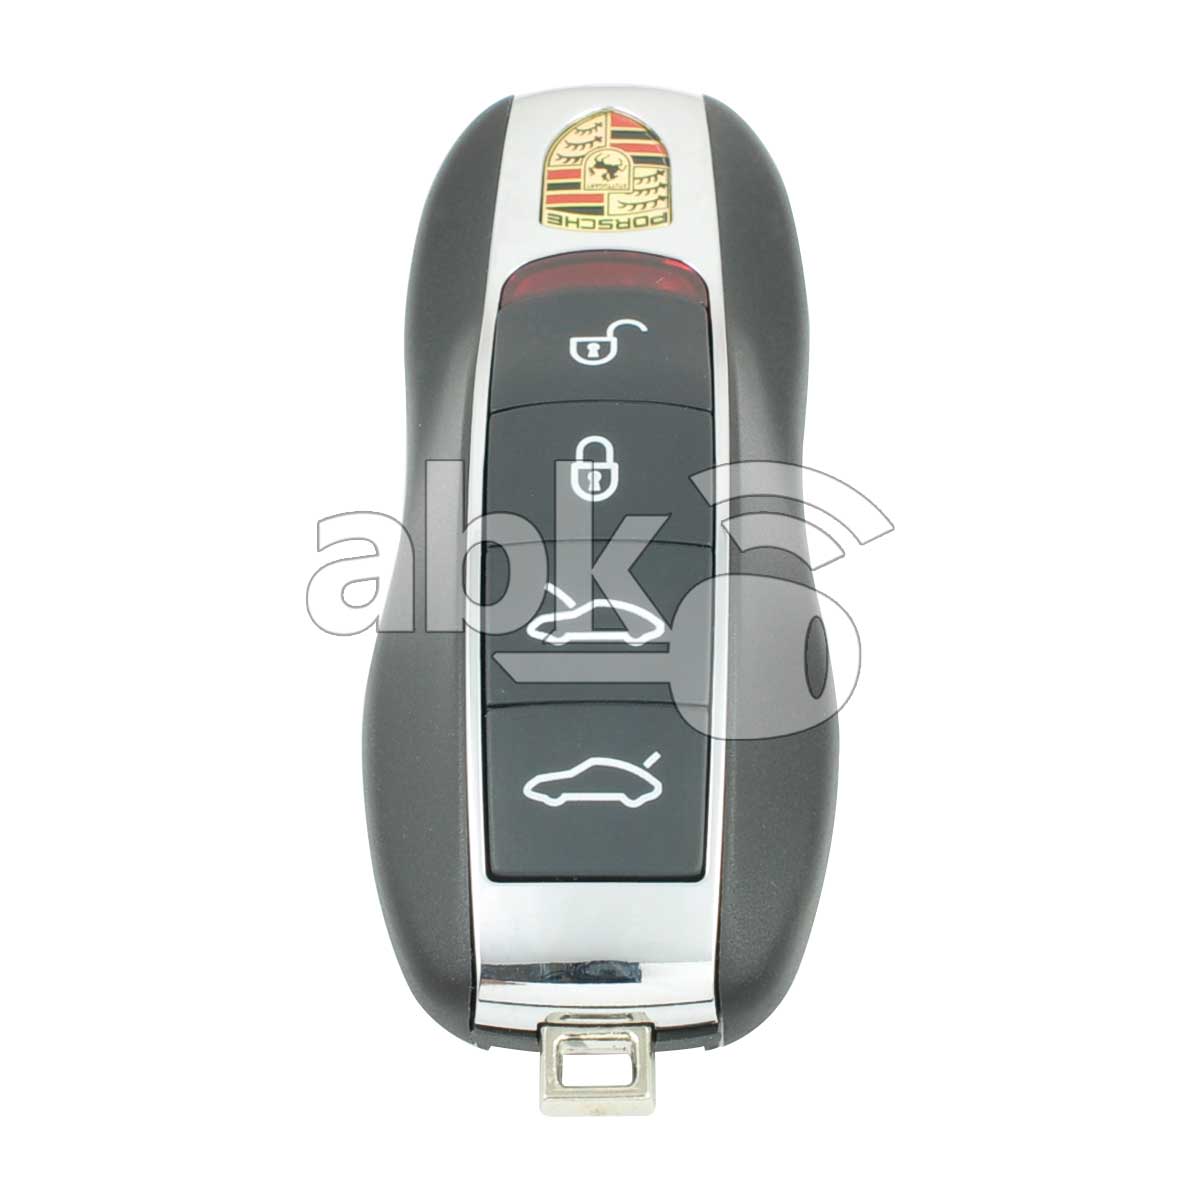 Porsche Panamera Macan 2013+ Smart Key 4Buttons 434MHz - ABK-3907 - ABKEYS.COM